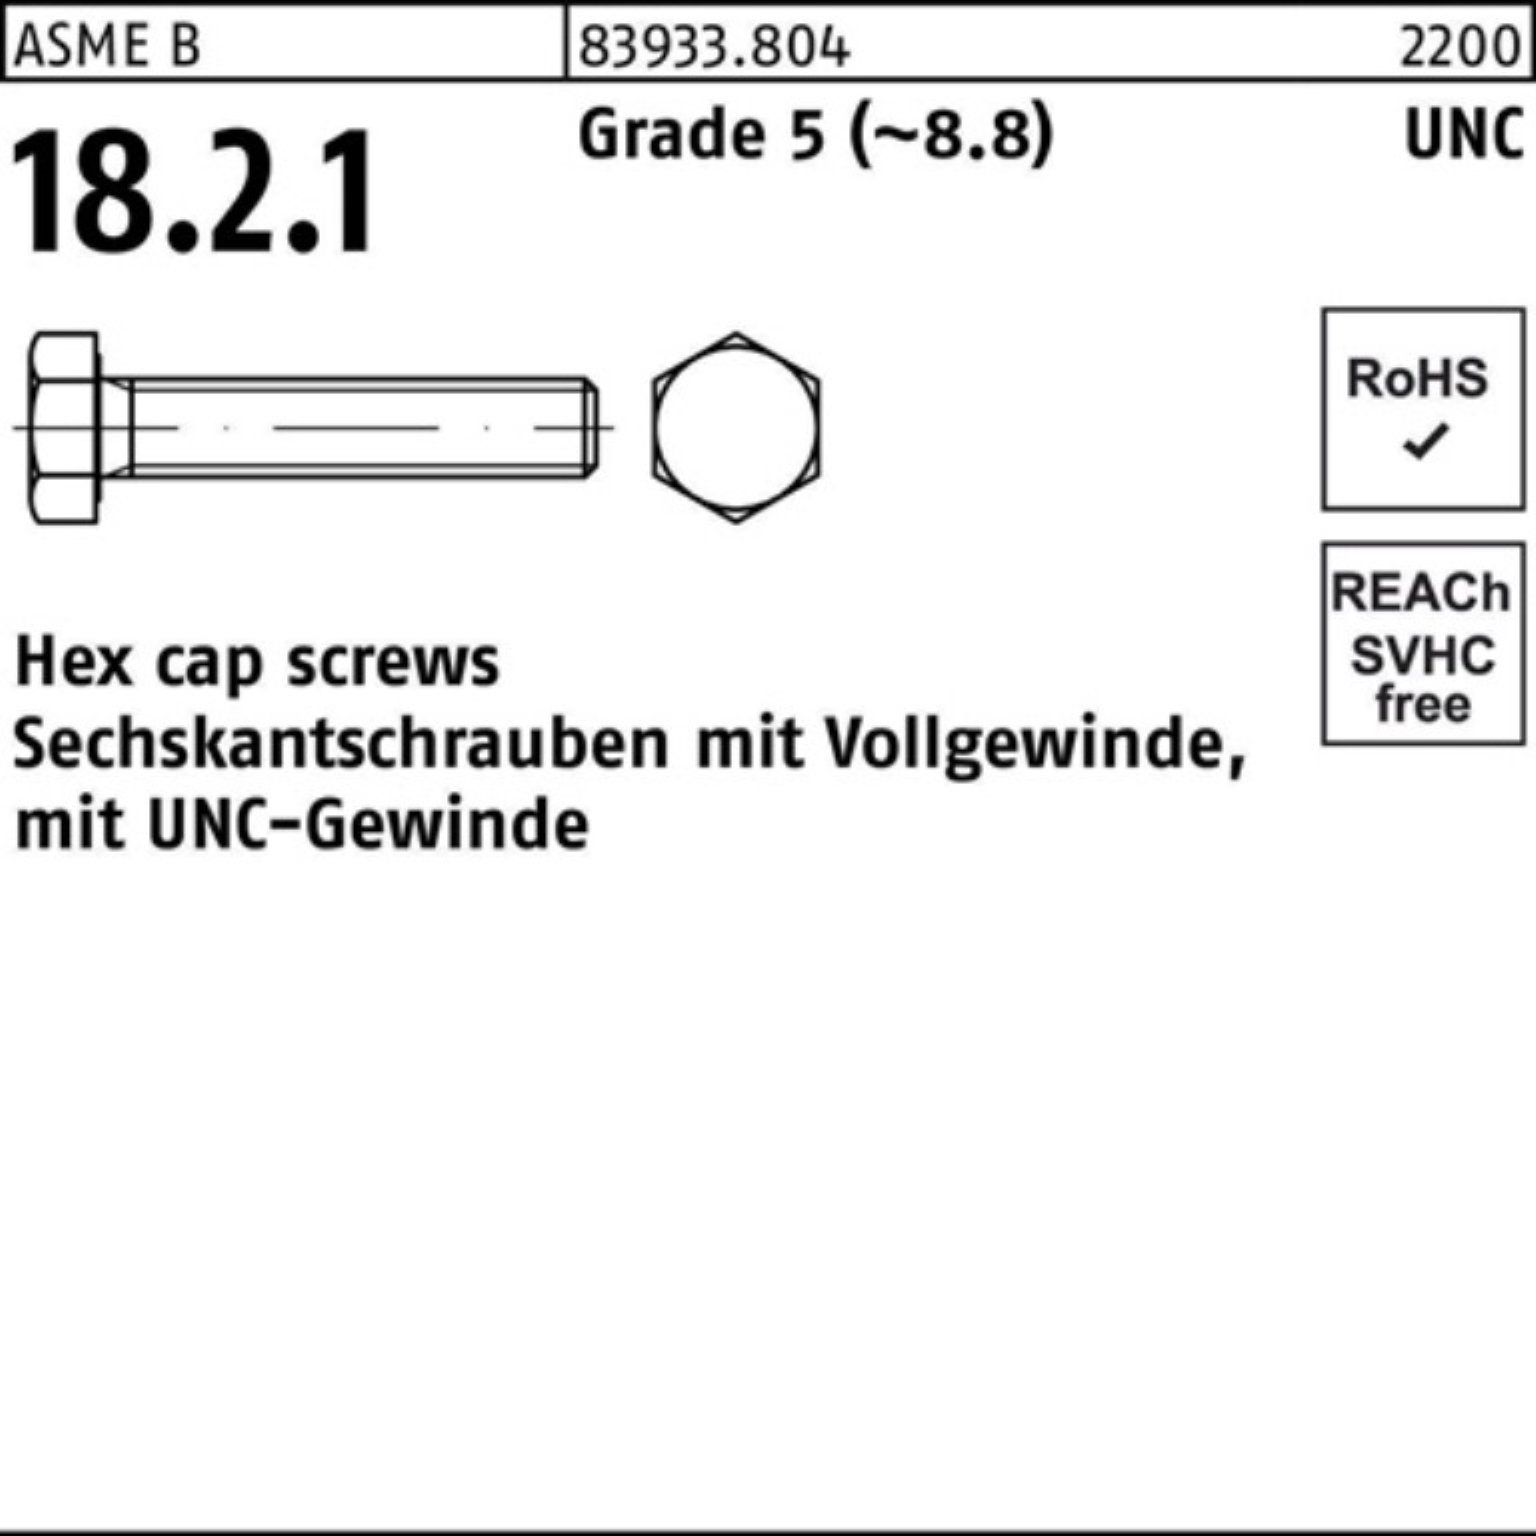 Reyher Sechskantschraube 100er Pack Sechskantschraube R 83933 UNC-Gewinde VG 7/16x 7/8 Grade 5